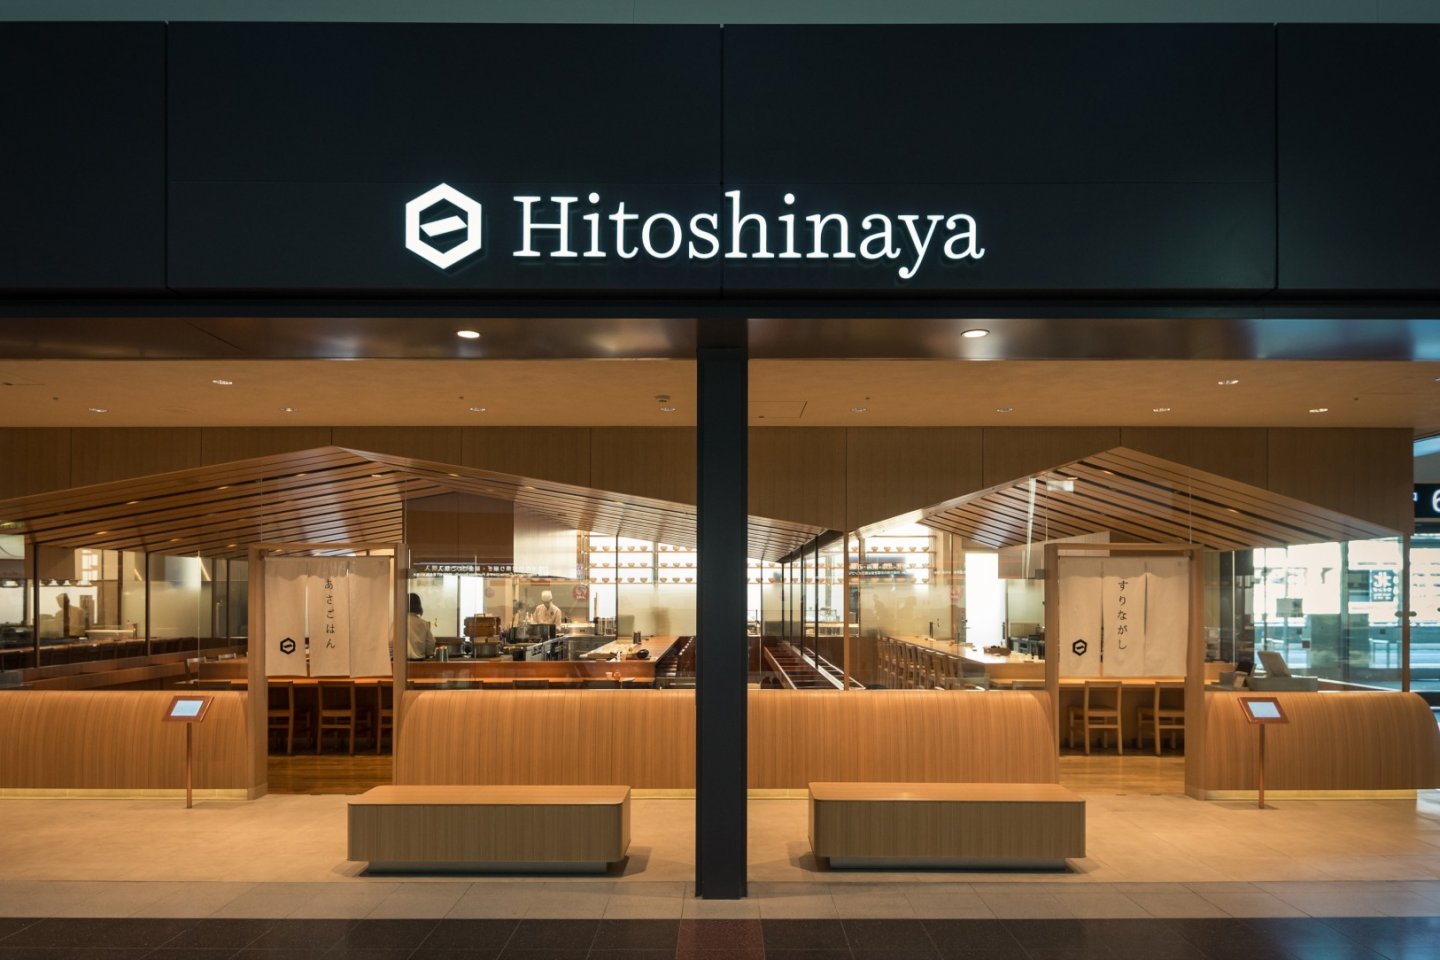 这张『Hitoshinaya』的正面图展示了日本餐厅现代风格的设计。